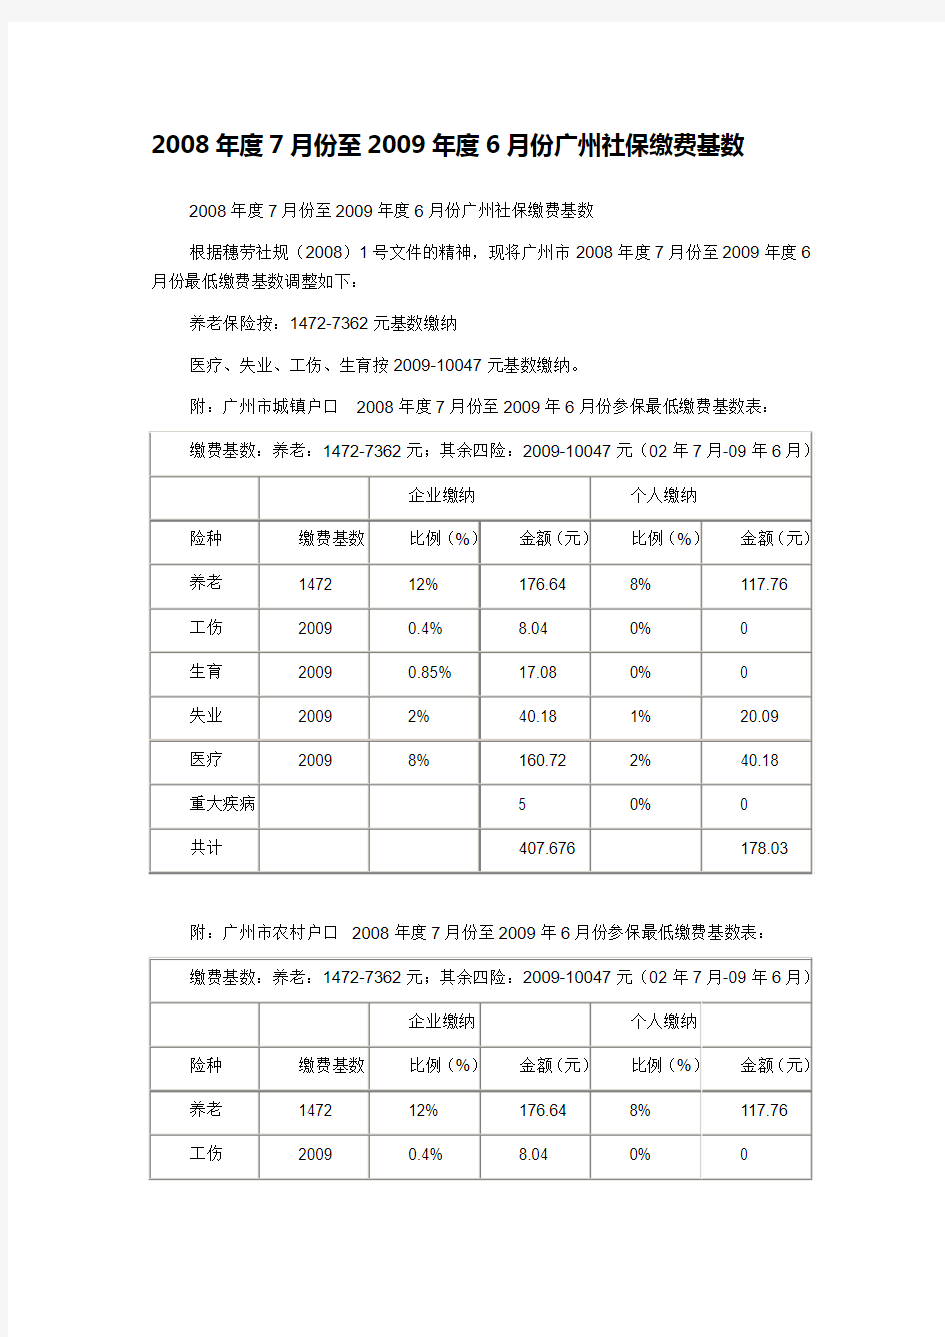 2008年度7月份至2009年度6月份广州社保缴费基数